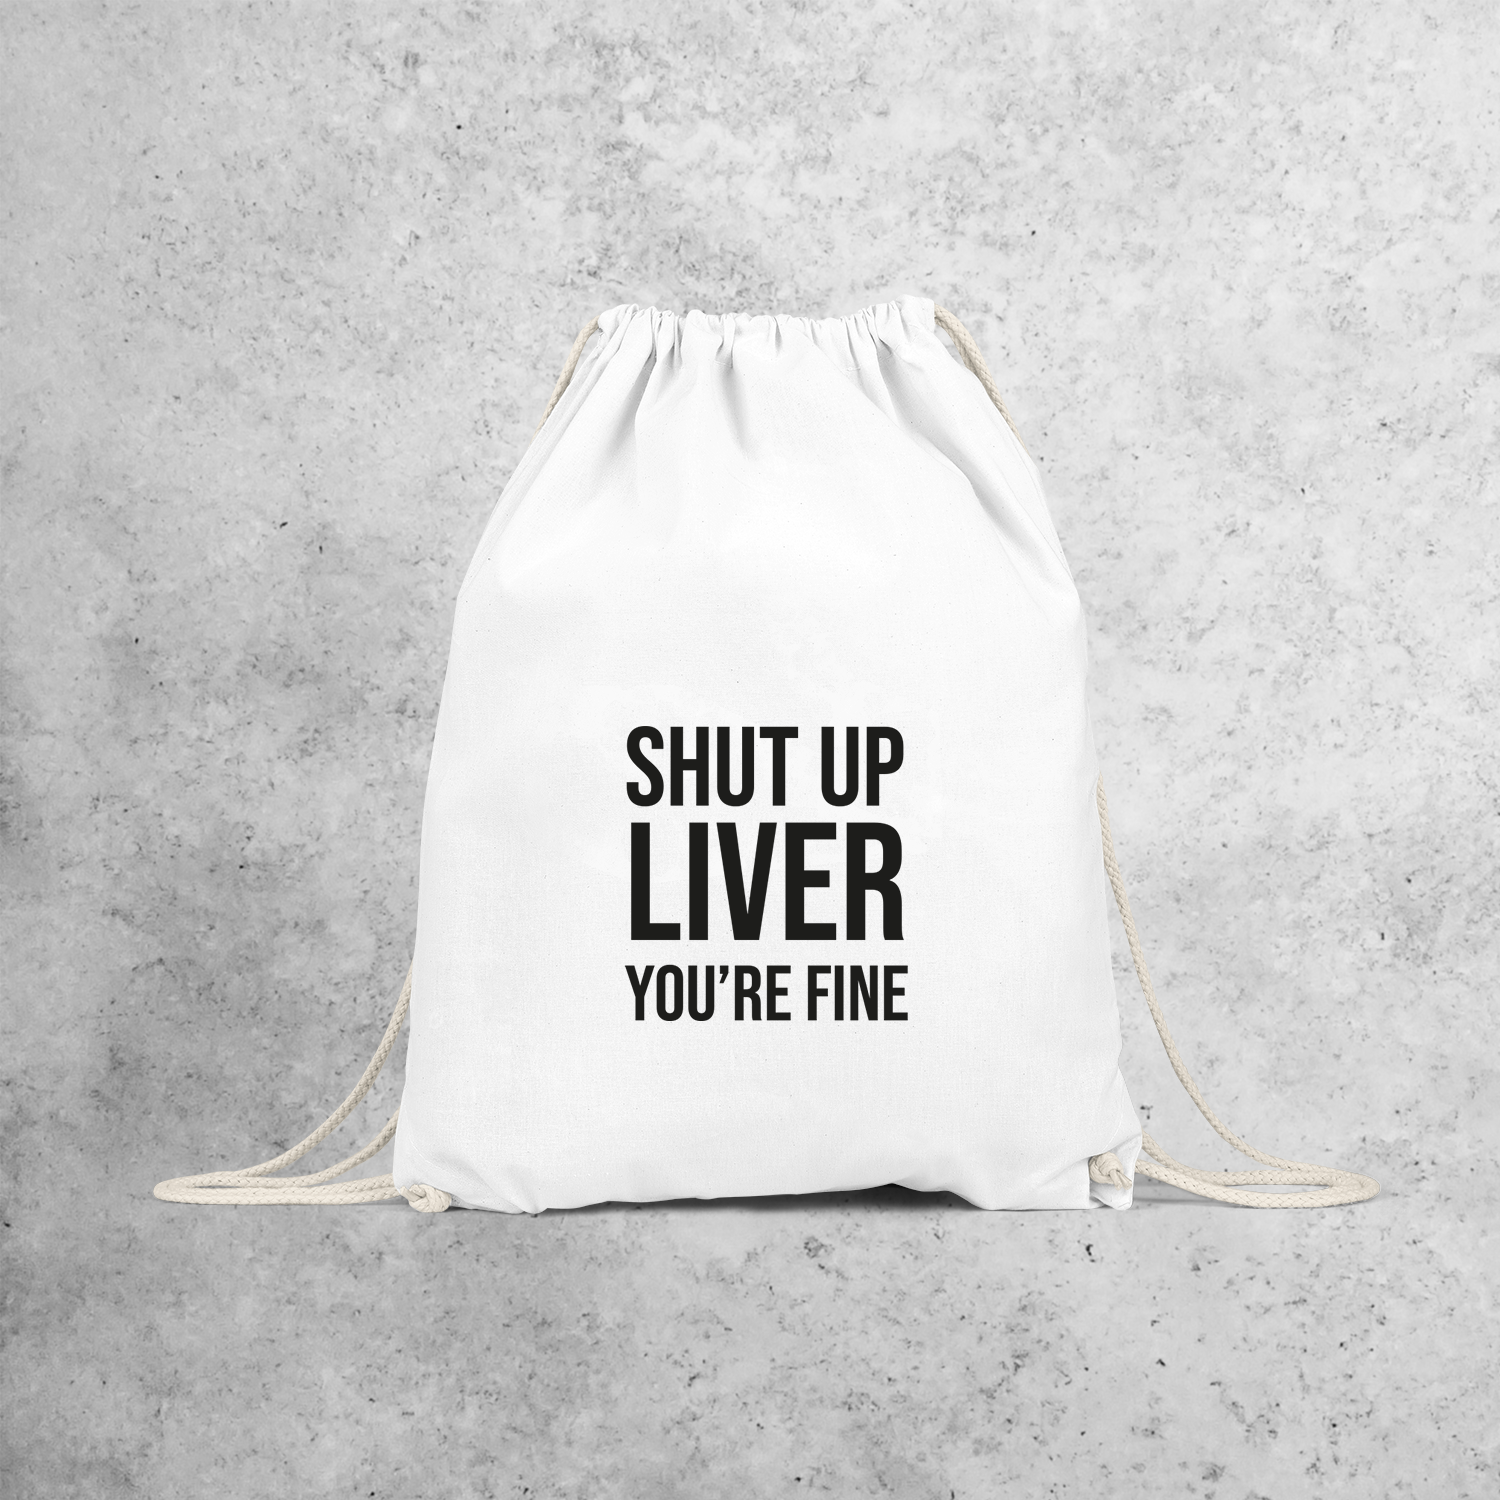 'Shut up liver, you're fine' backpack